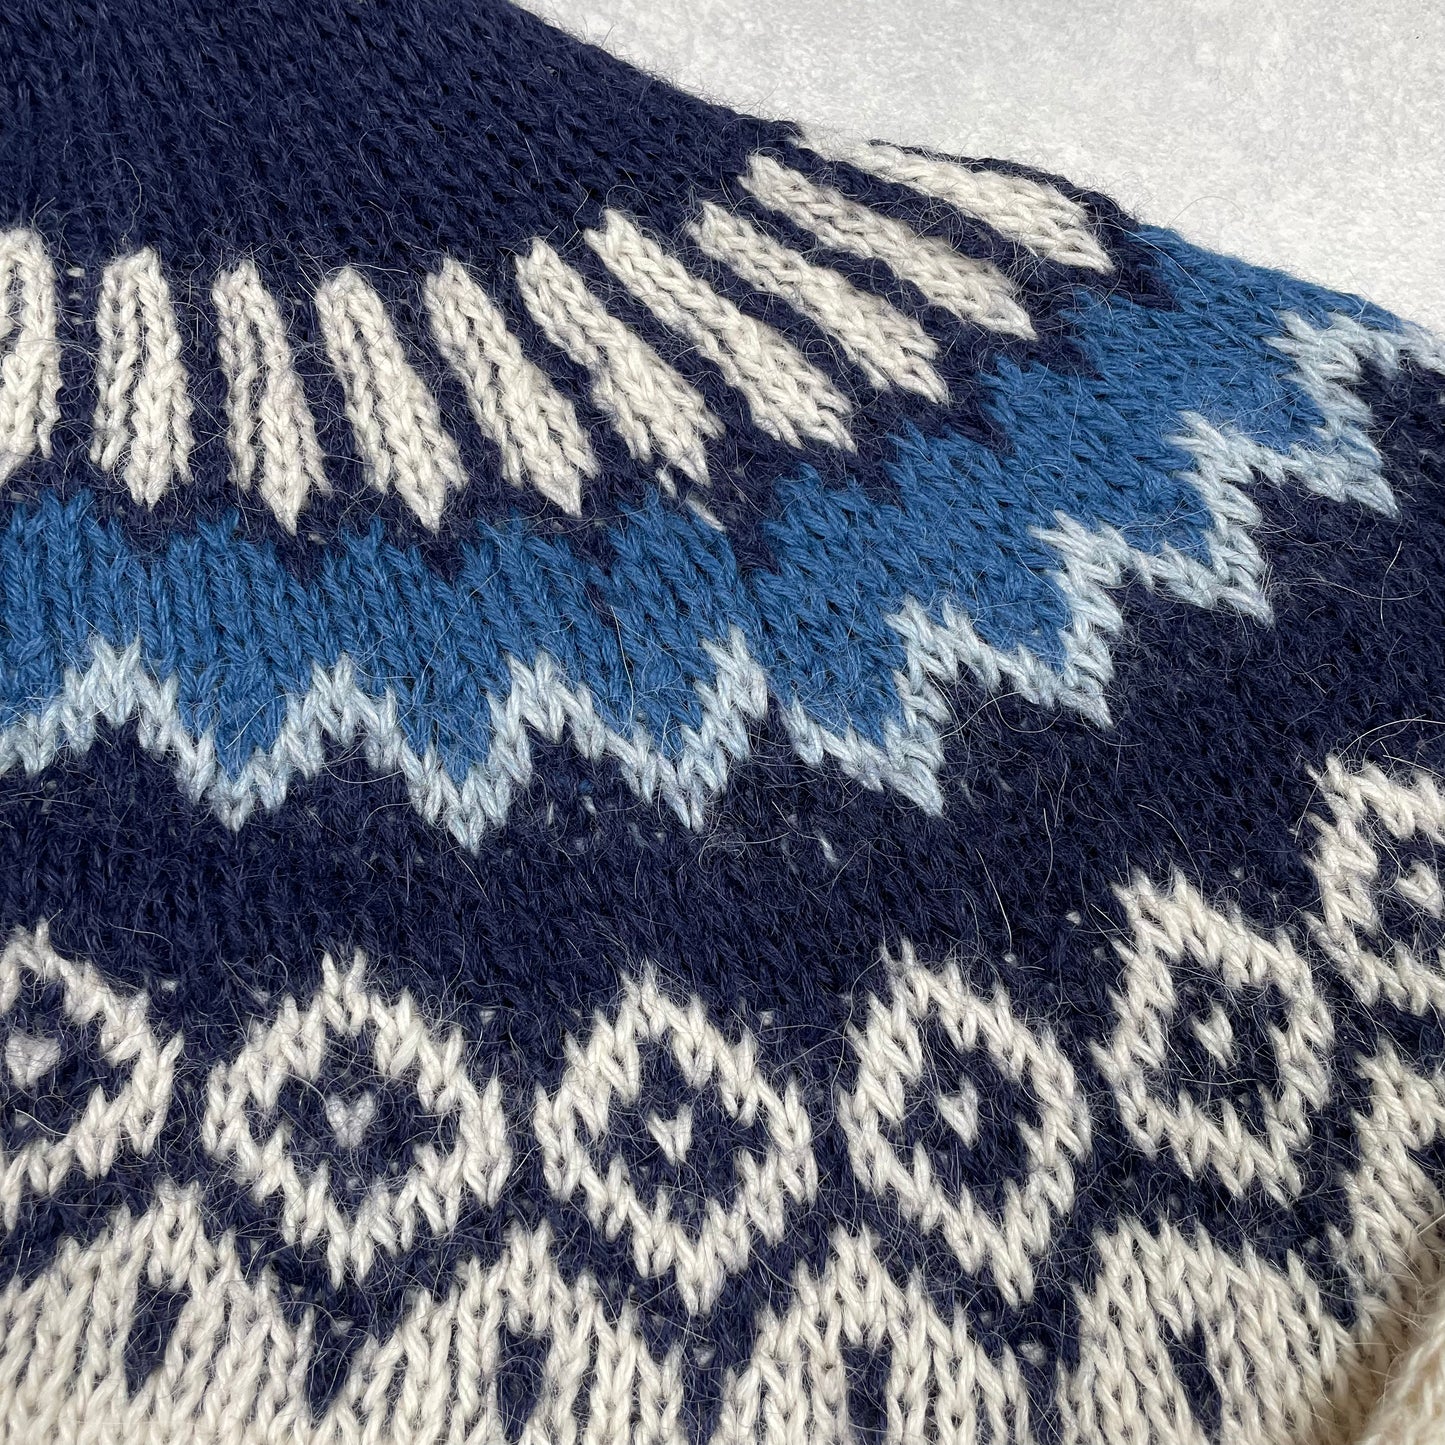 Vintage Sweater White Blue 100% Alpaca Made in Peru